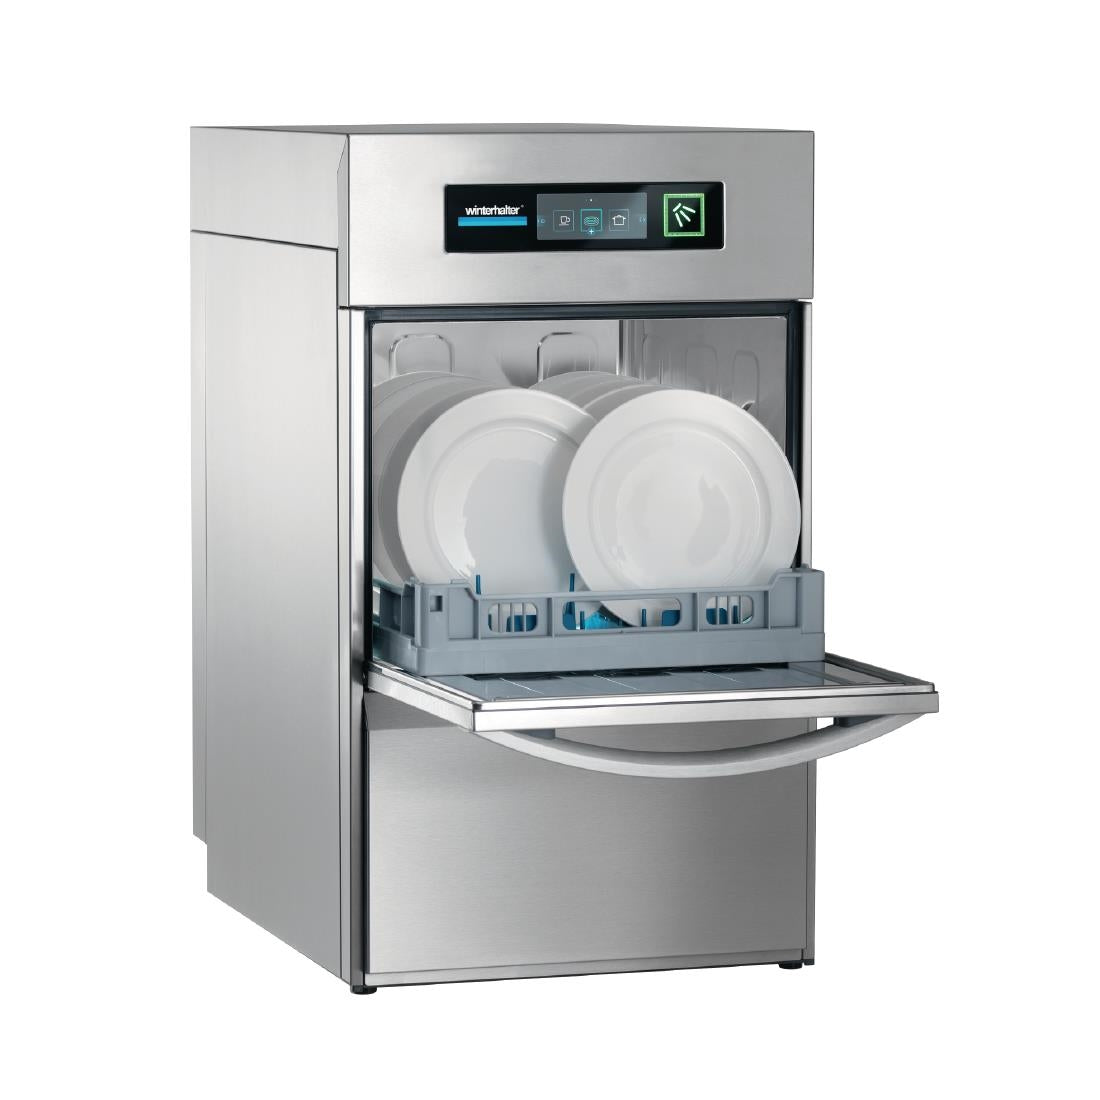 DE640 Winterhalter Undercounter Dishwasher UC-S JD Catering Equipment Solutions Ltd